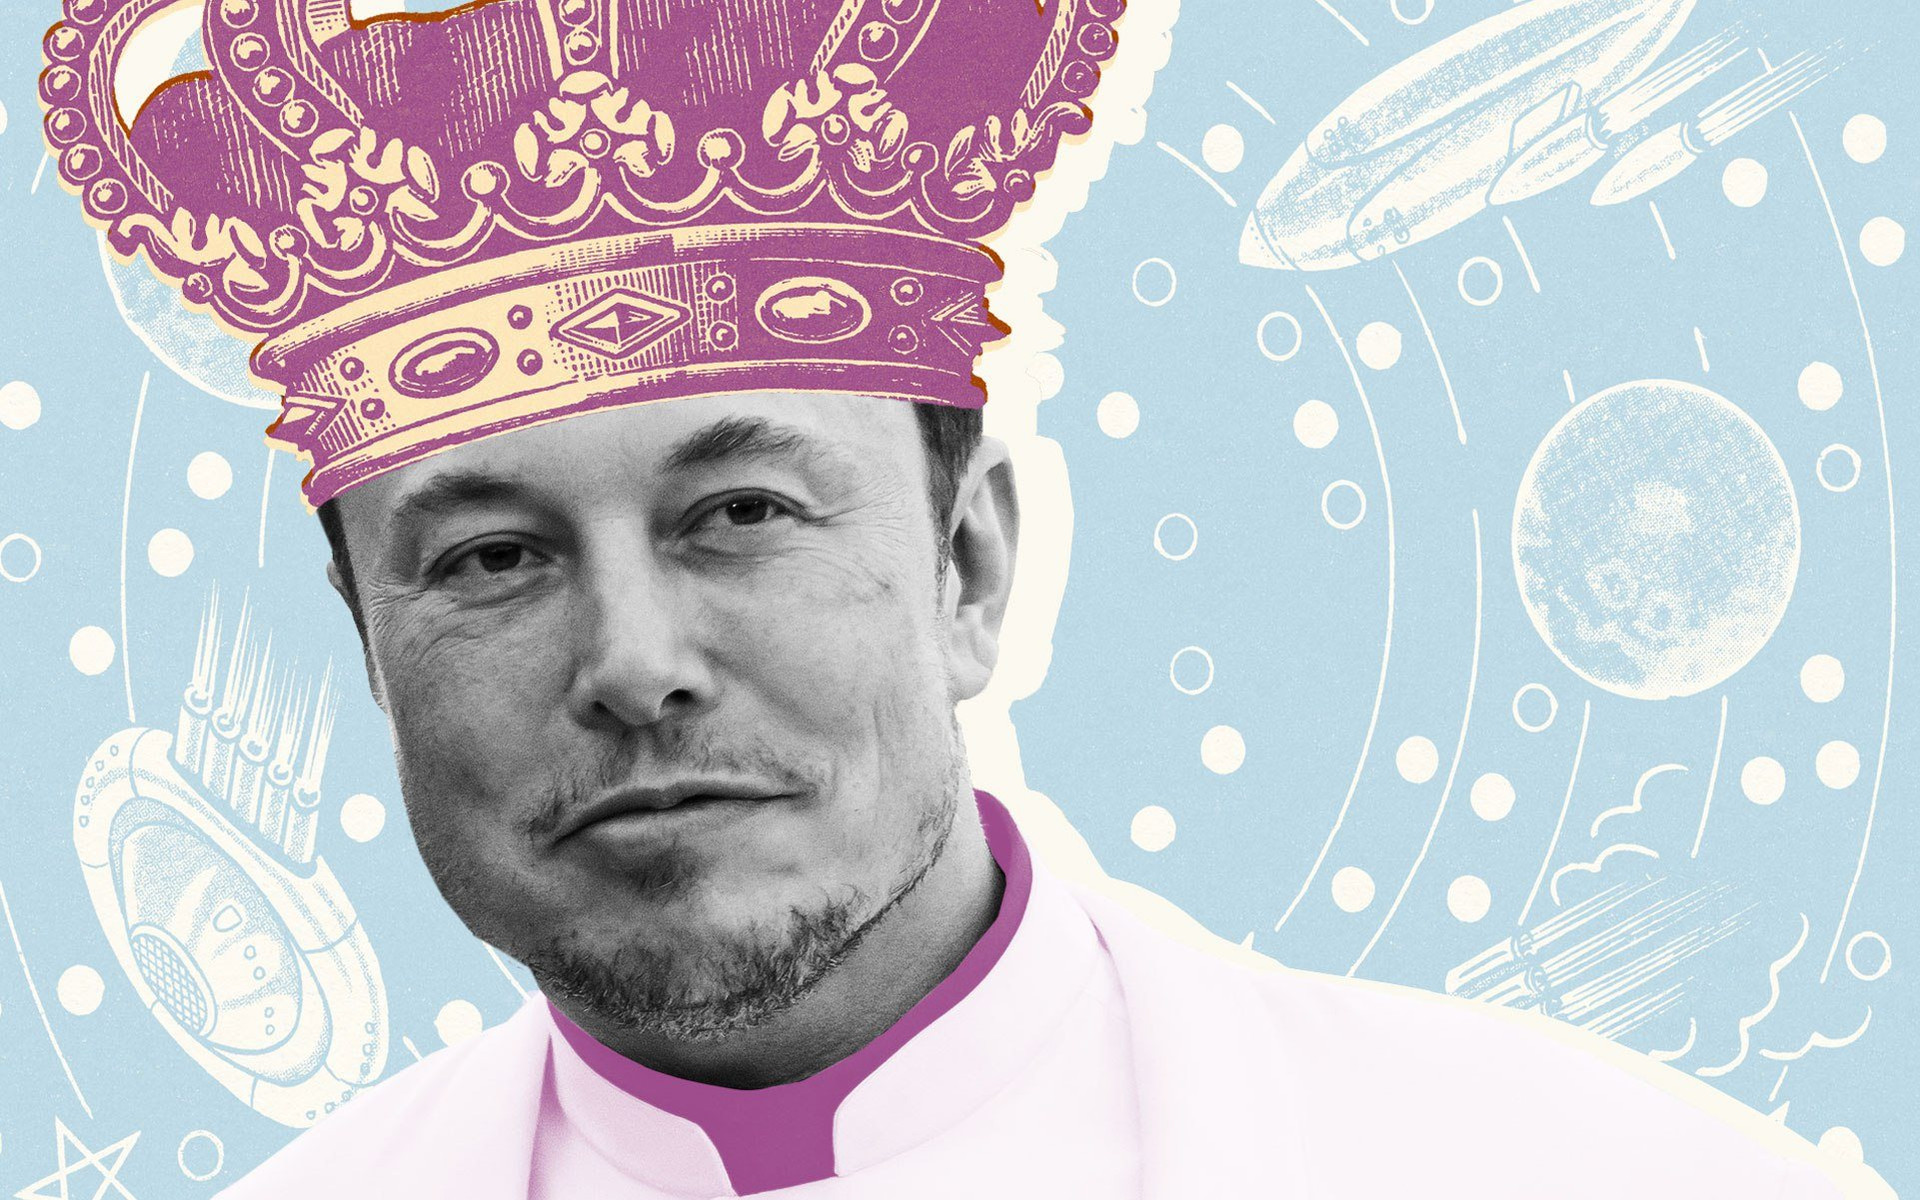 'Văn hóa sùng bái' khiến Elon Musk tự mãn: Tưởng có 'bạn' nhưng thực chất là 'bè' - Ảnh 1.